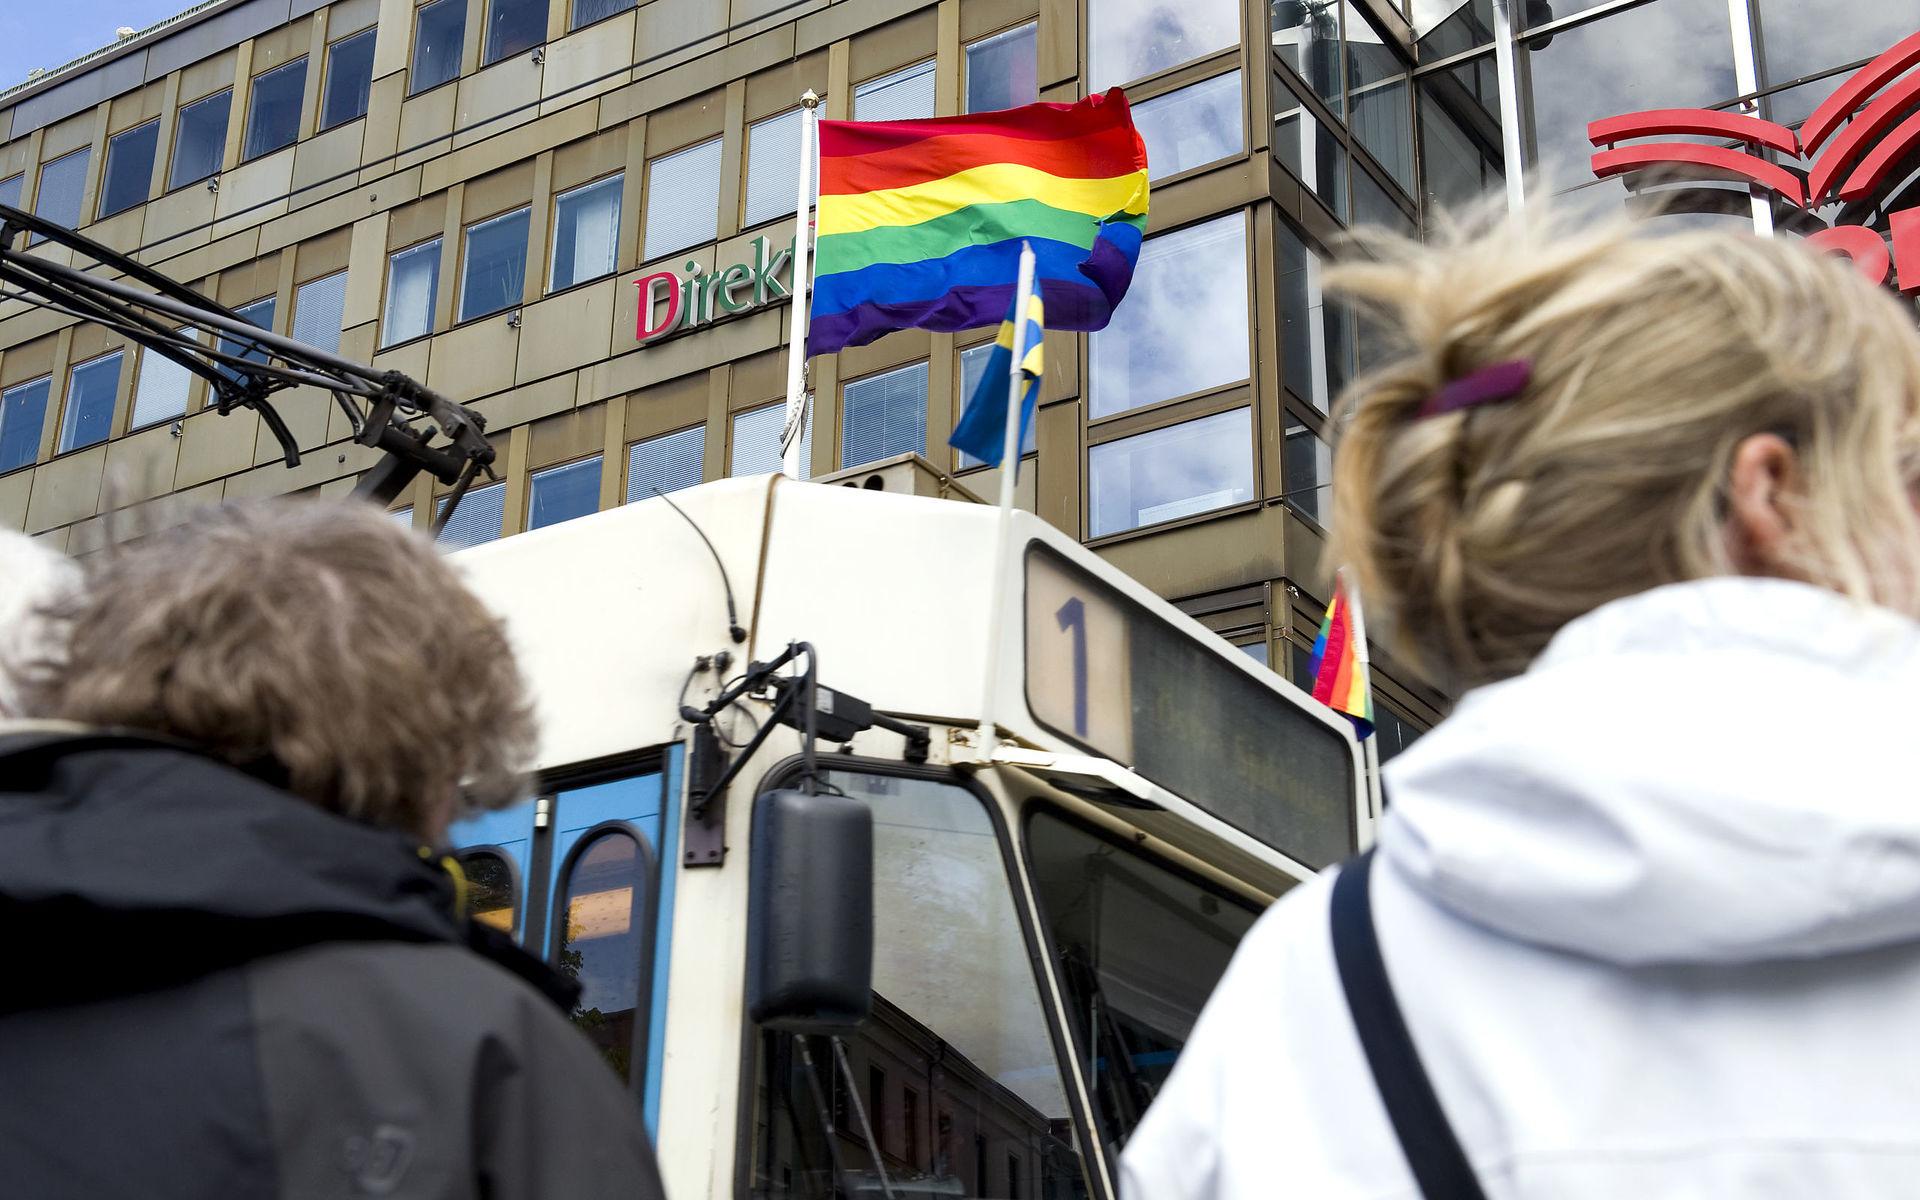 I Göteborg vajar regnbågsflaggorna under West Pride varje år, till exempel på spårvagnarna. Men i andra kommuner ses flaggan som mer kontroversiell och i Sölvesborg har politikerna beslutat att förbjuda den i kommunala sammanhang.